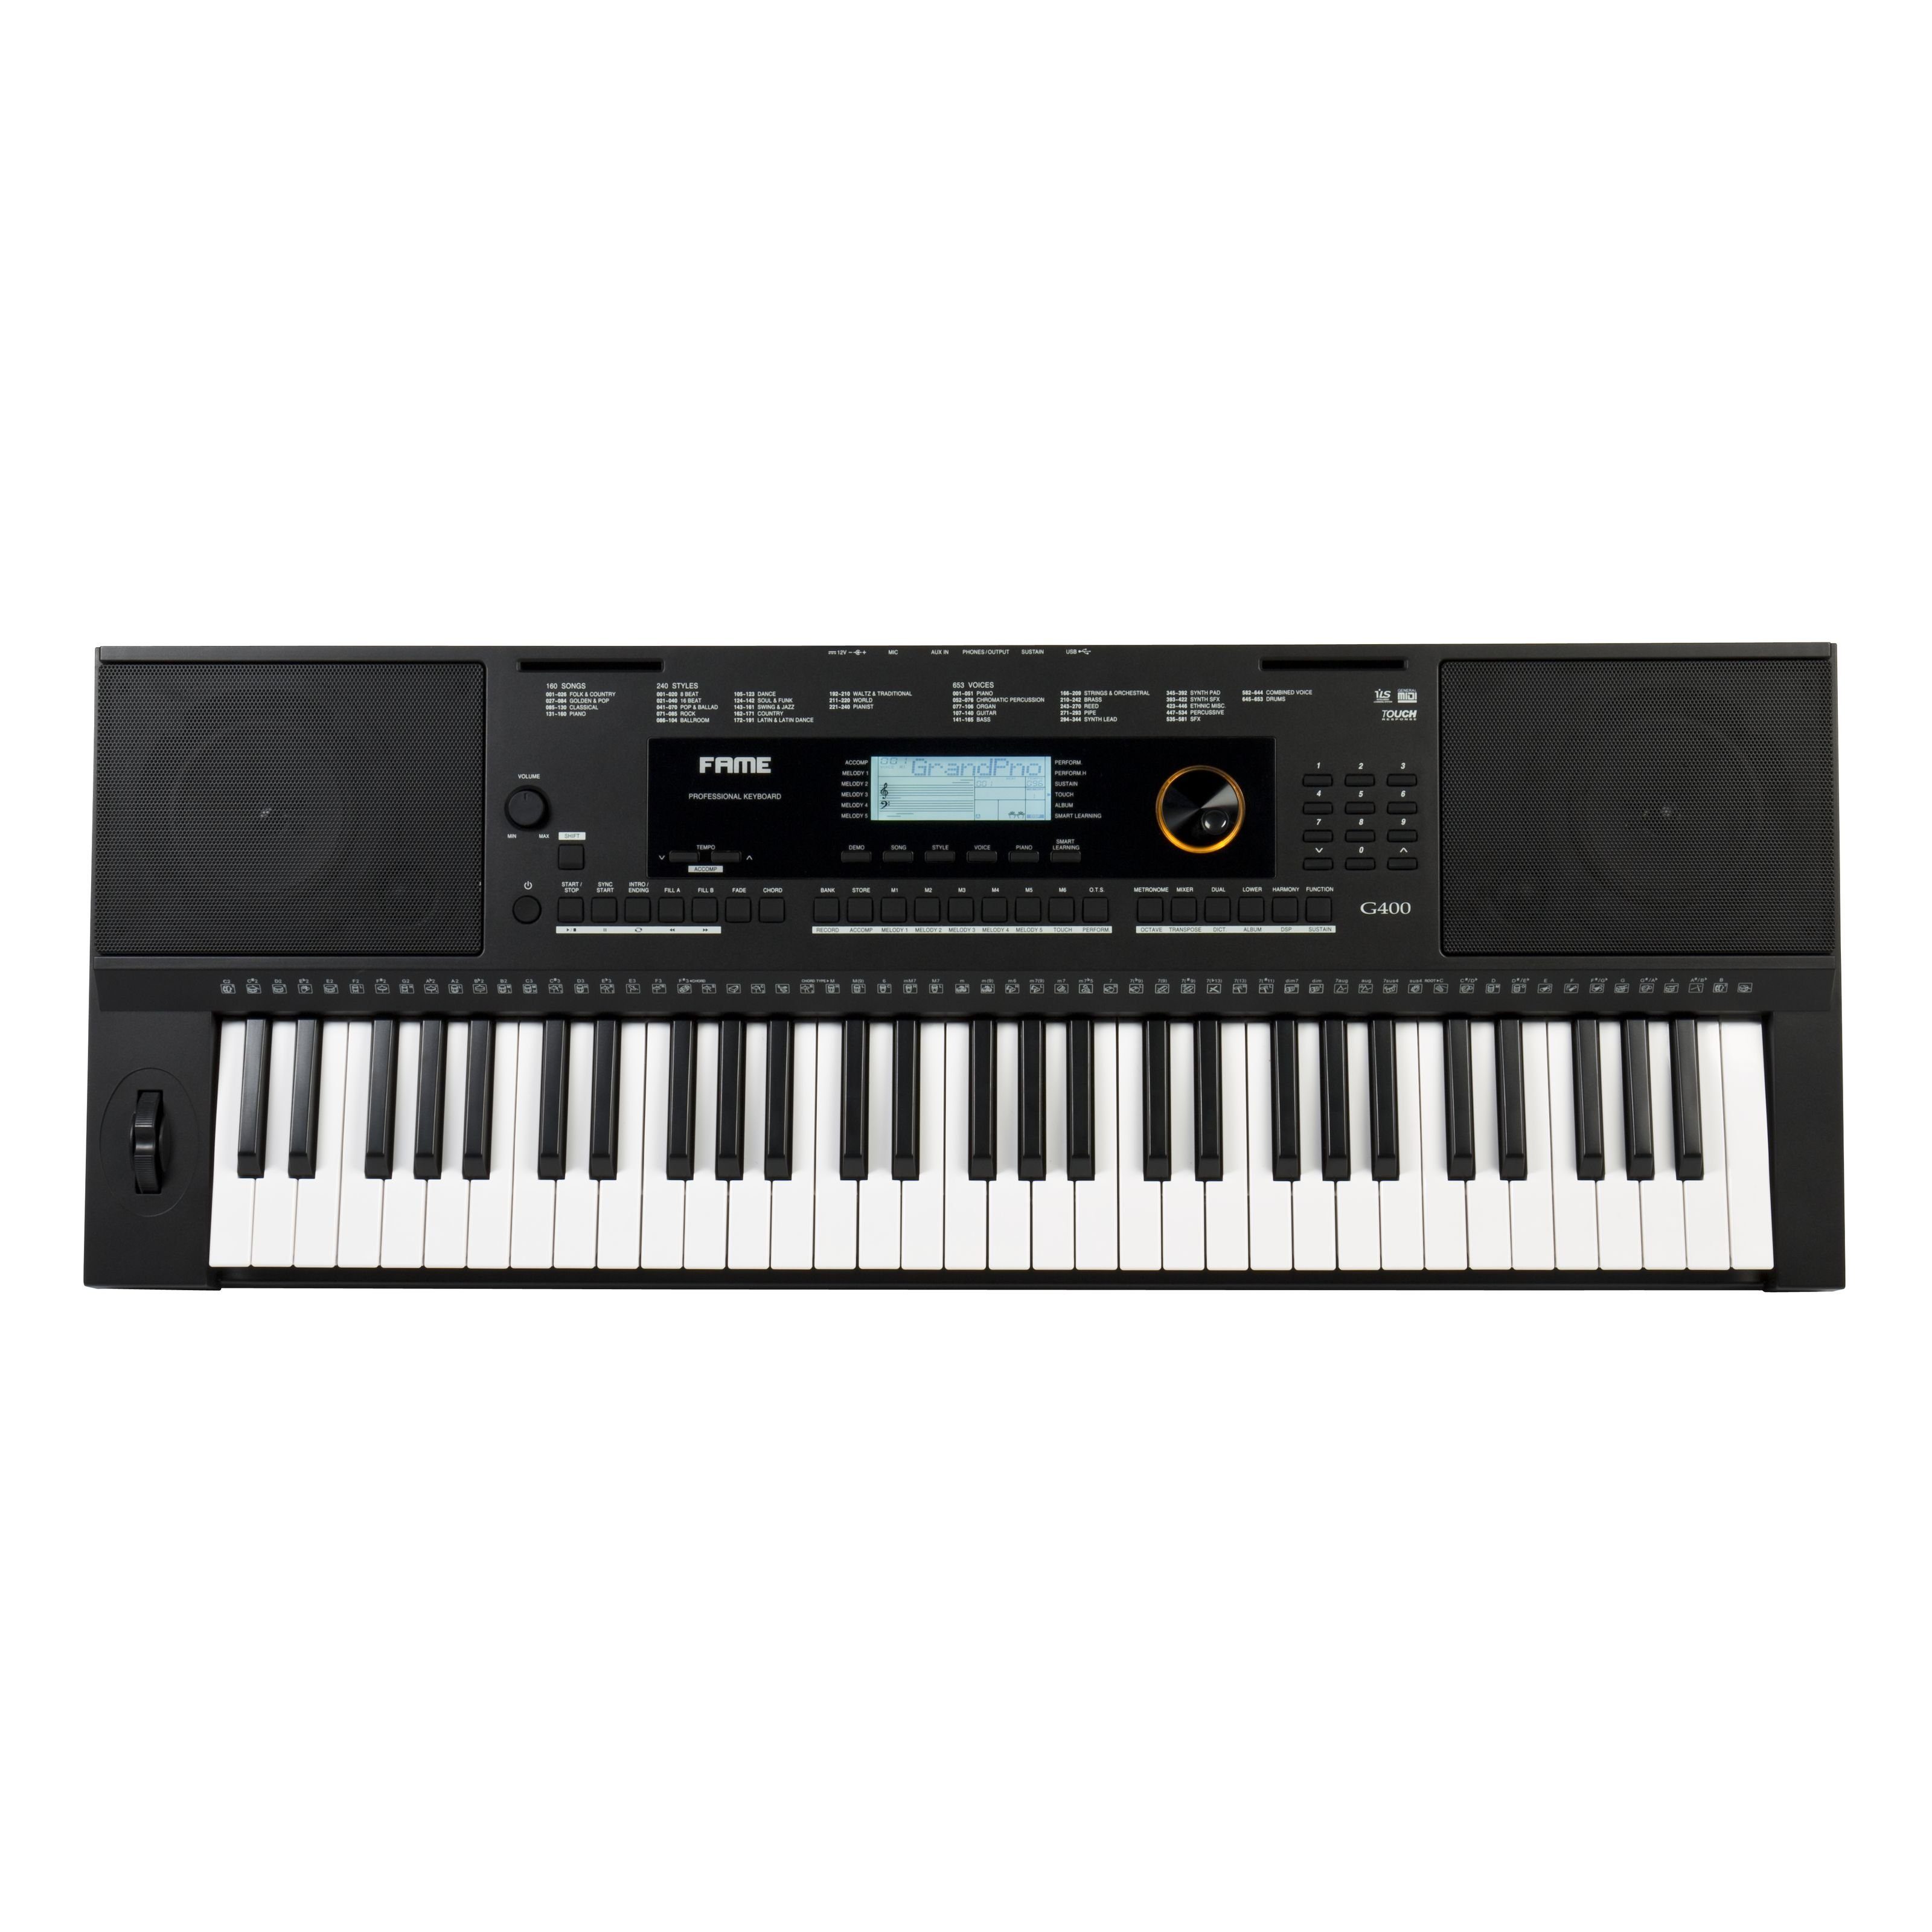 FAME Home-Keyboard (G-400 Keyboard, E-Piano mit 128-facher Polyphonie, 61 Tasten, 240 Styles, 653 Sounds, anschlagdynamischer Klaviatur, Lautsprechern und Hammermechanik, Schwarz, Keyboards, Home Keyboards), G-400 Keyboard, E-Piano, 61 Tasten